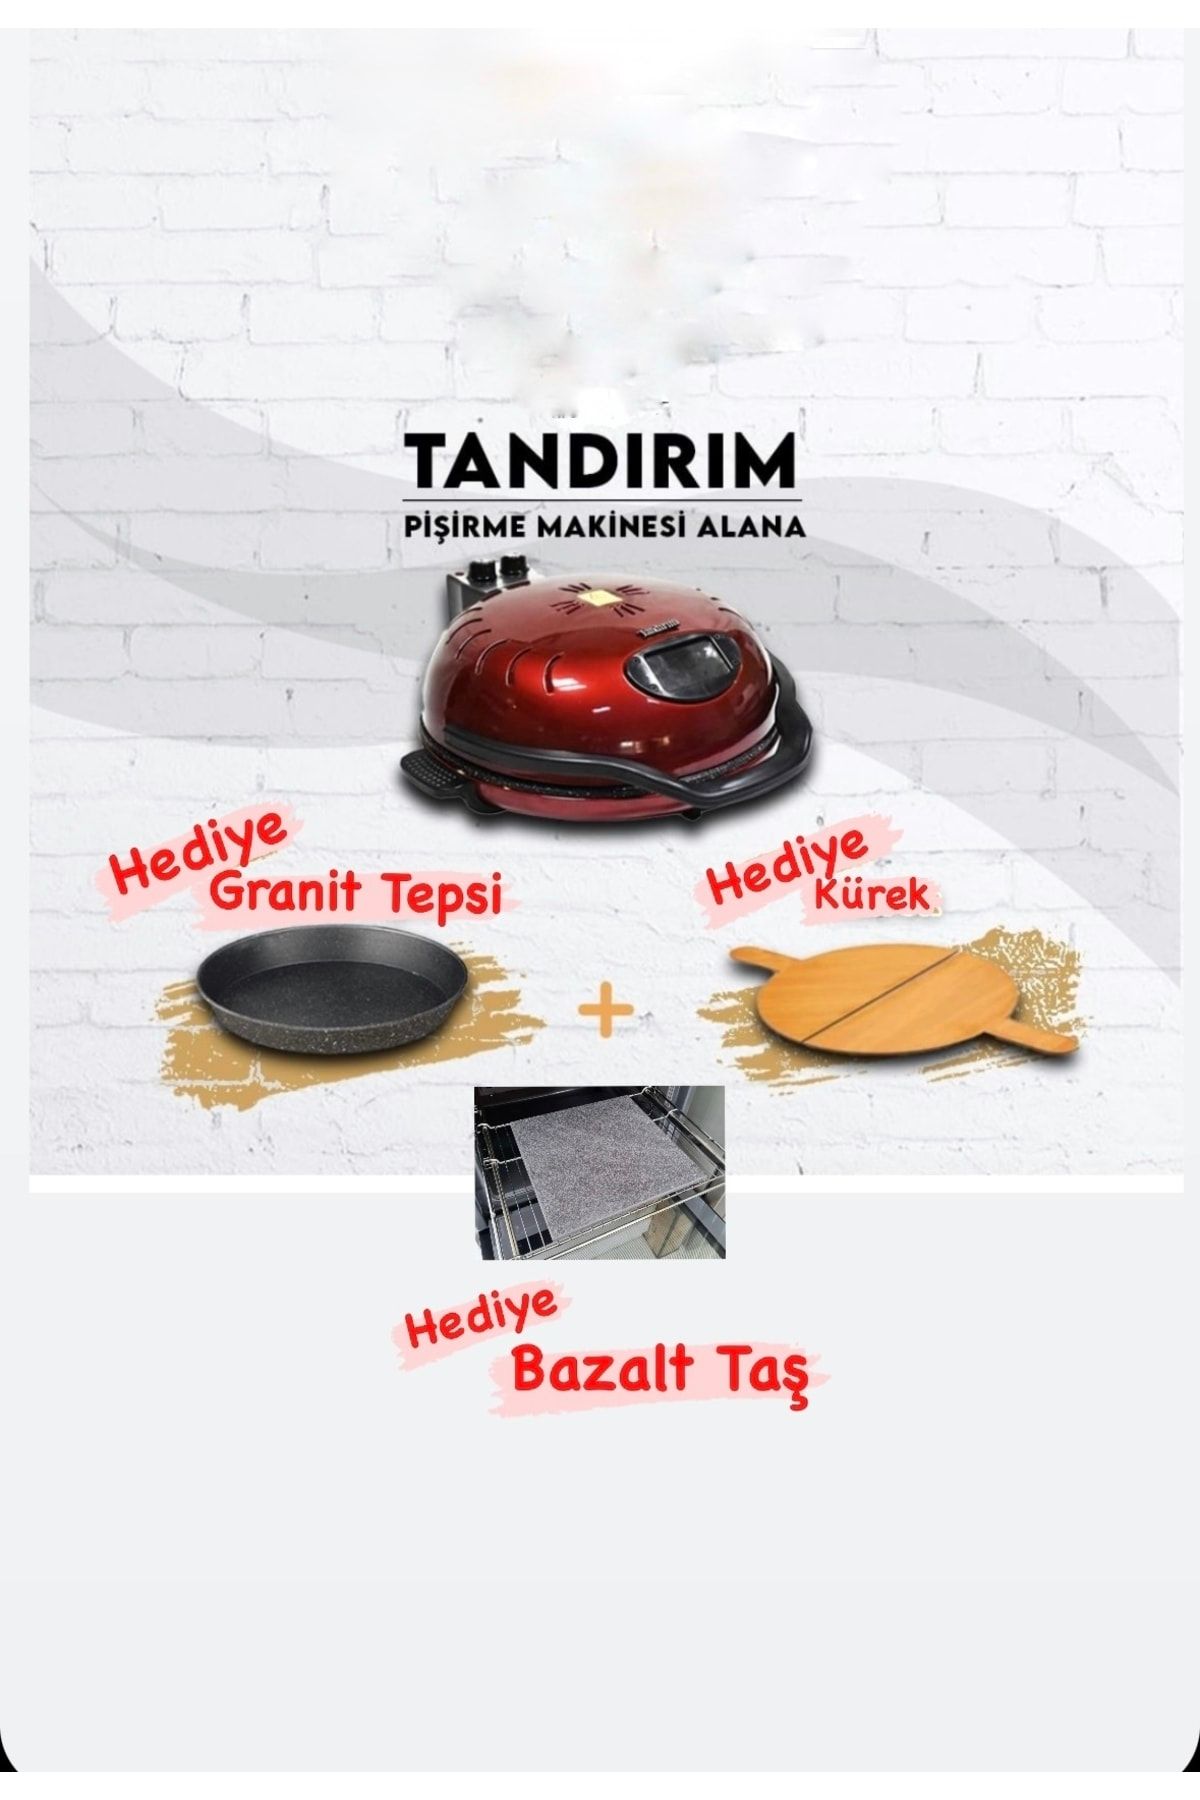 TANDIRIM Hsr Home&living Ekmek Pişirme Makinesi Bazalt Taş Ve Kürek Hediyeli